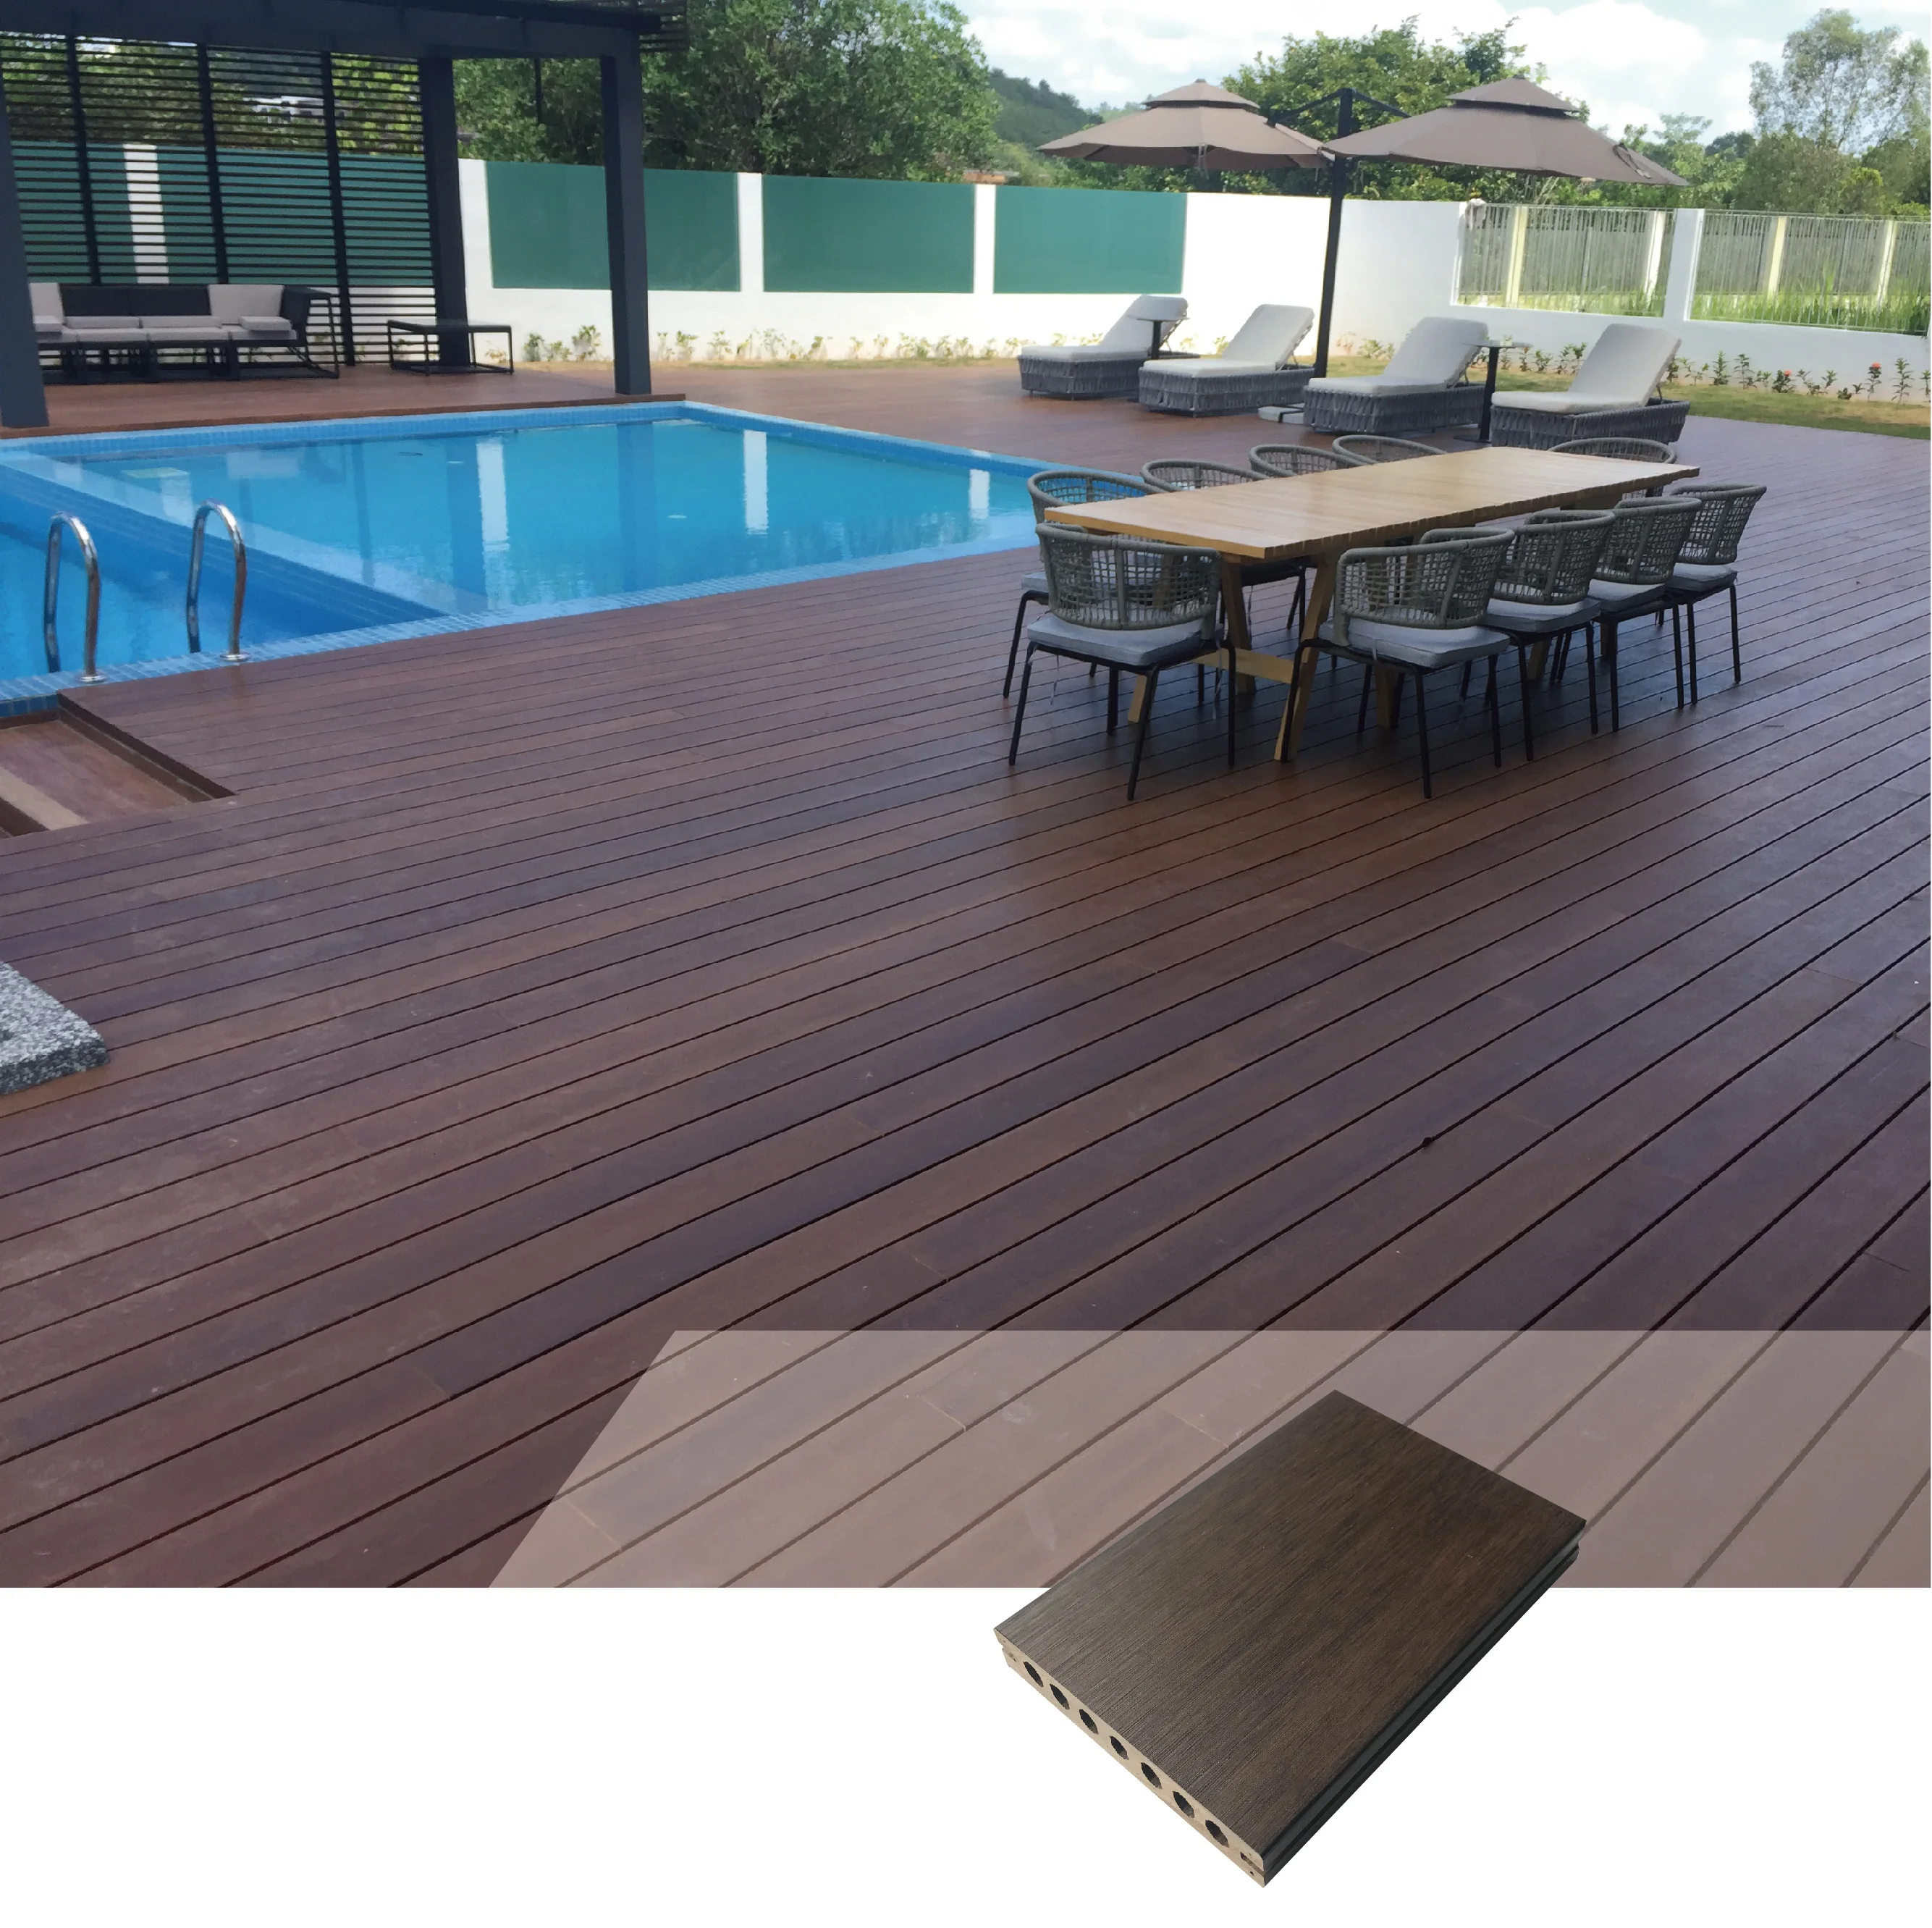 2021 New Wpc Waterproof Wood Plastic Composite Terrace Outdoor Decking Villa Flooring Buy Wpc Decking Floor Wpc Flooring Outdoor Wpc Terrace Product On Alibaba Com